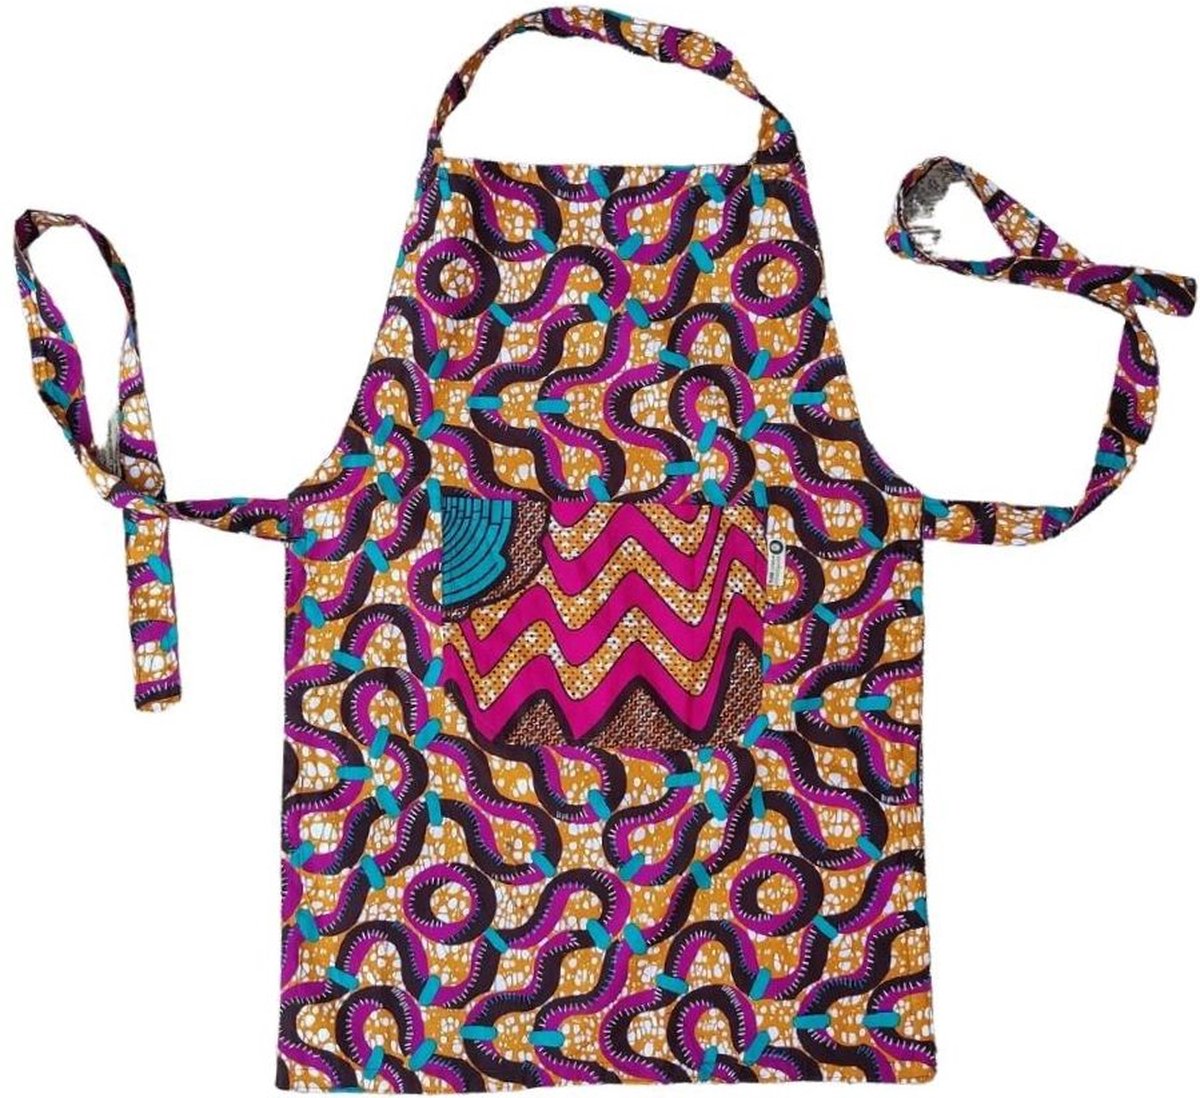 Keukenschort | Perfect cadeau | Schort Fairtrade veelkleurig | Kookschort | Goed doel | Maame Tumi | Handgemaakt in Ghana | Kleurrijk keukenschort met dubbelzijdige print